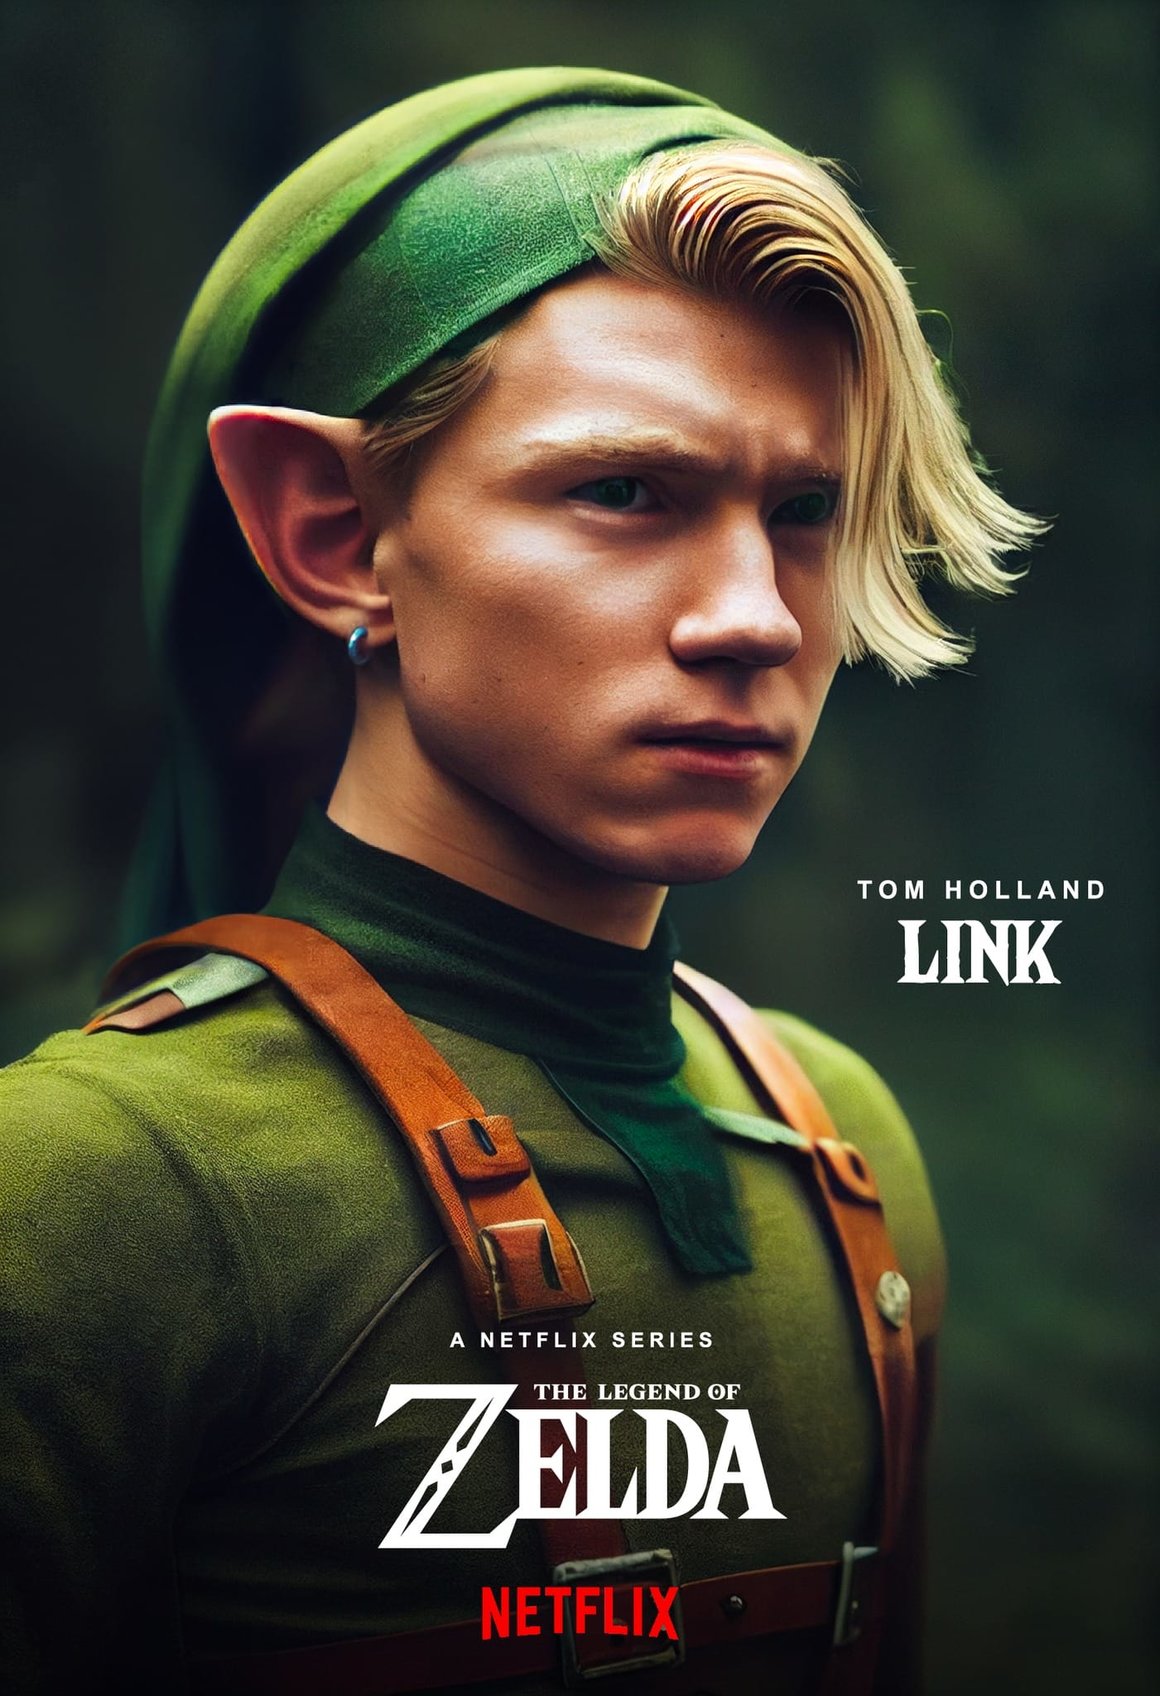 Fausse affiche d'une série Netflix avec l'acteur Tom Holland déguisé en Link.